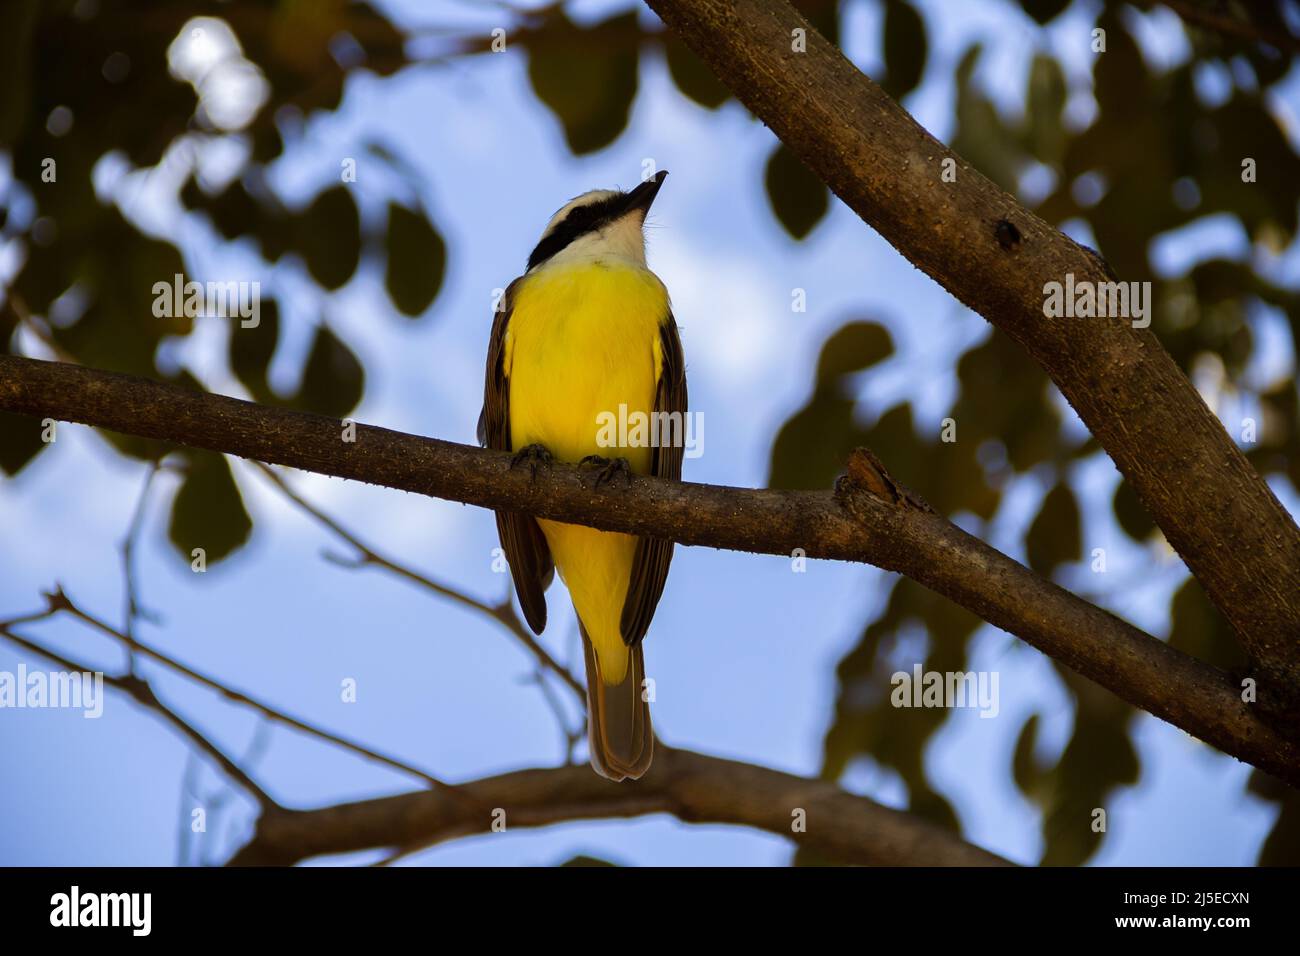 Goiânia, Goias, Brazil – April 22, 2022: A bird perched on the branch of a leafy tree. Pitangus sulphuratus. Stock Photo